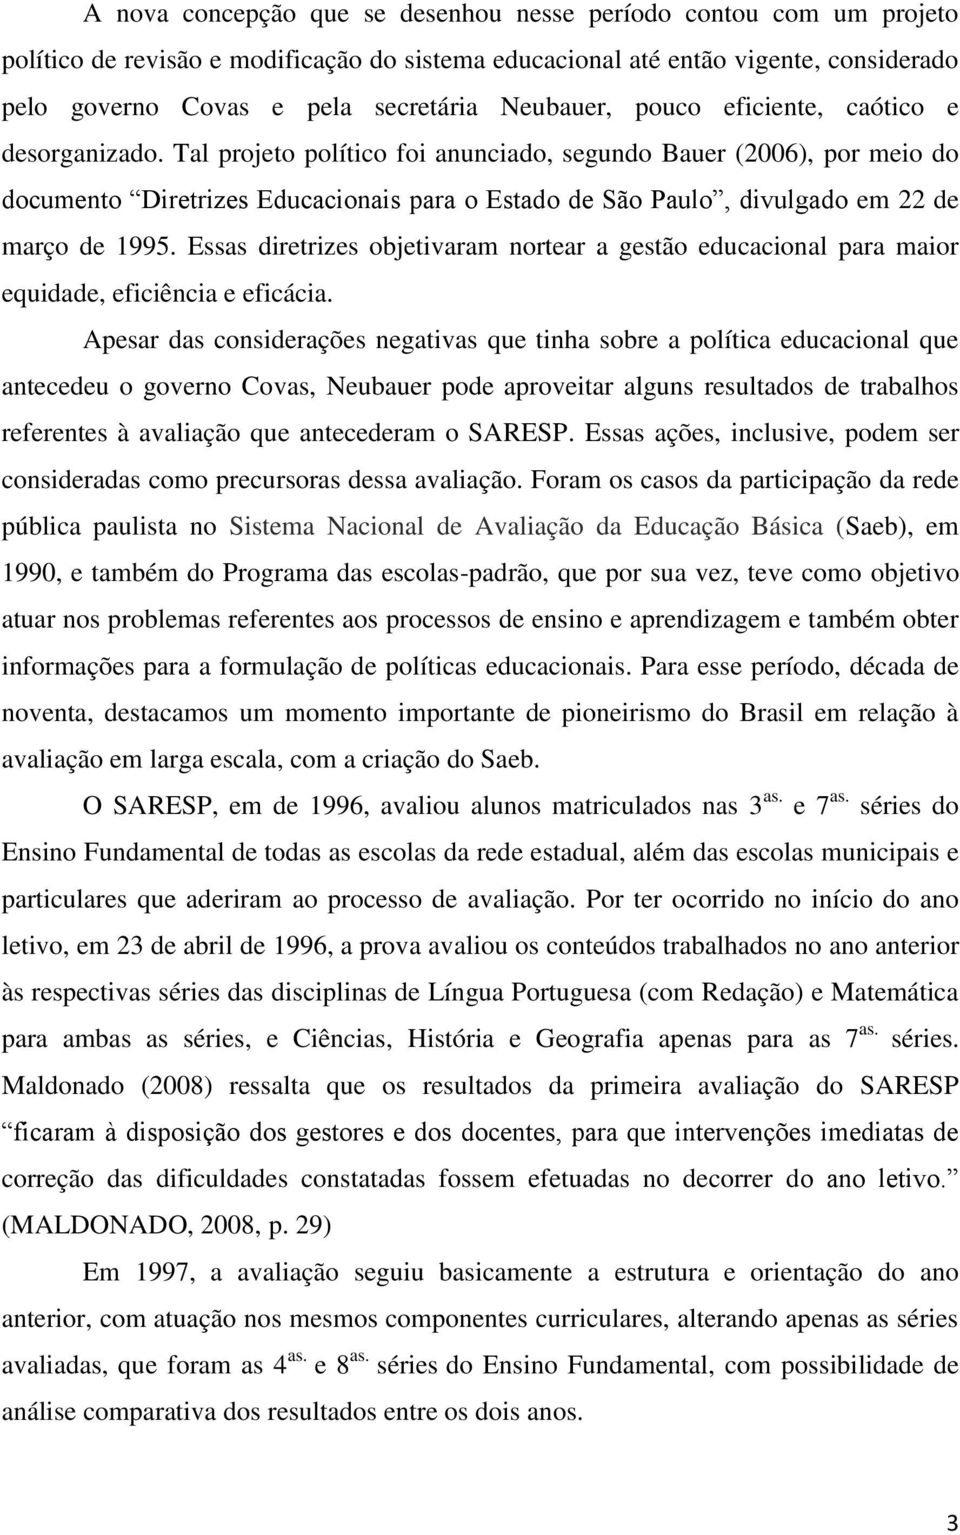 Tal projeto político foi anunciado, segundo Bauer (2006), por meio do documento Diretrizes Educacionais para o Estado de São Paulo, divulgado em 22 de março de 1995.